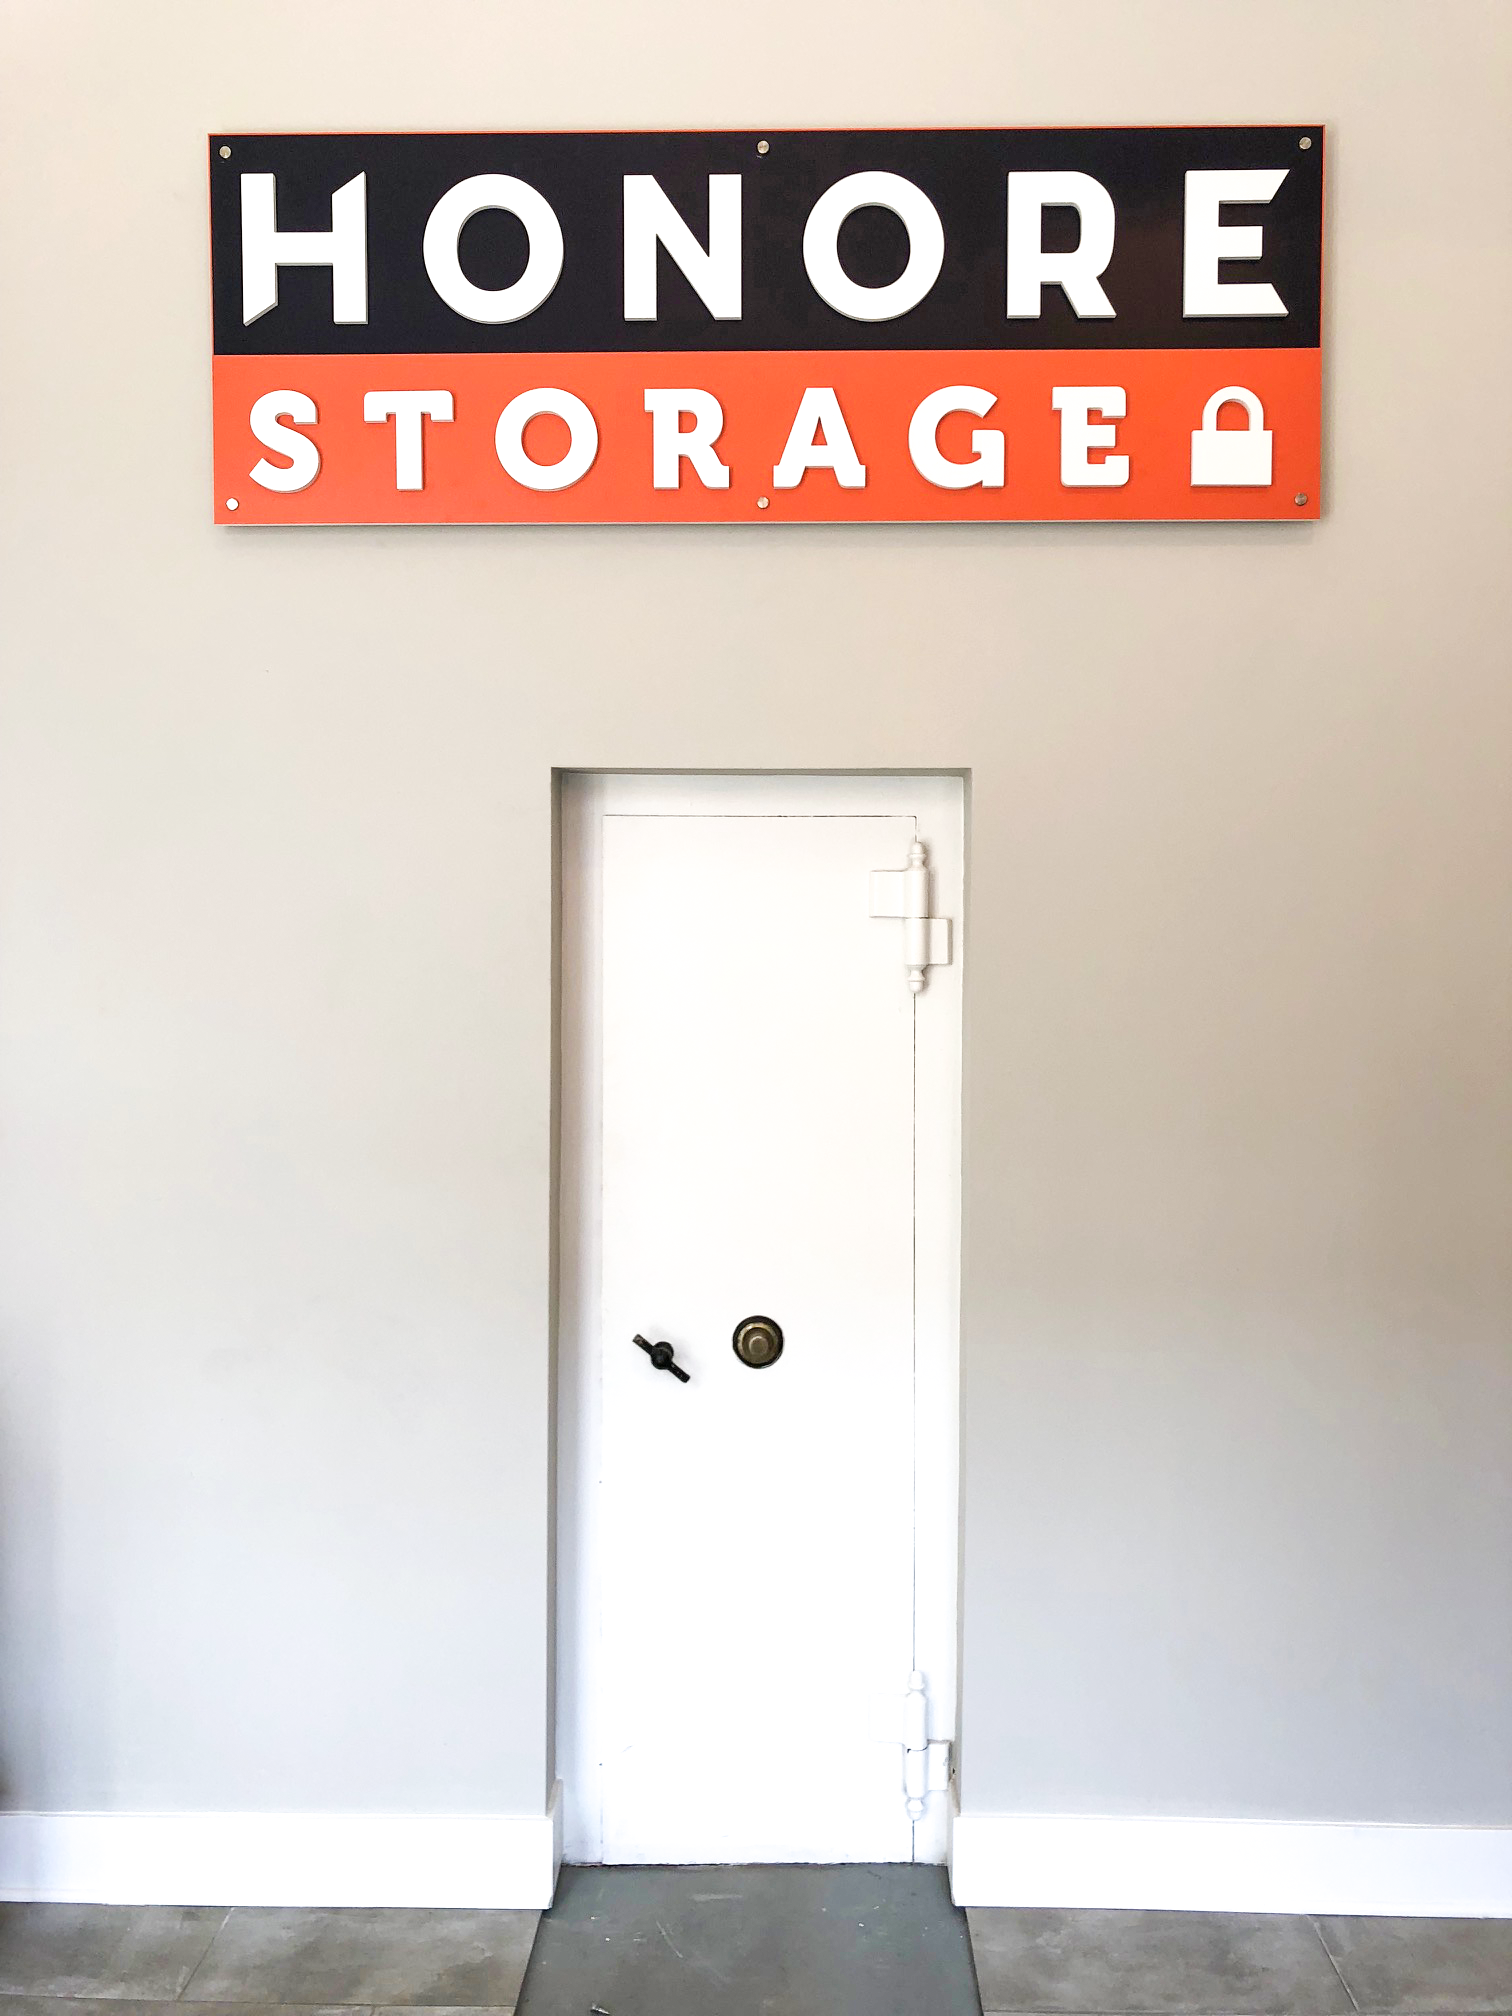 Sign above vault door promoting Honor Storage